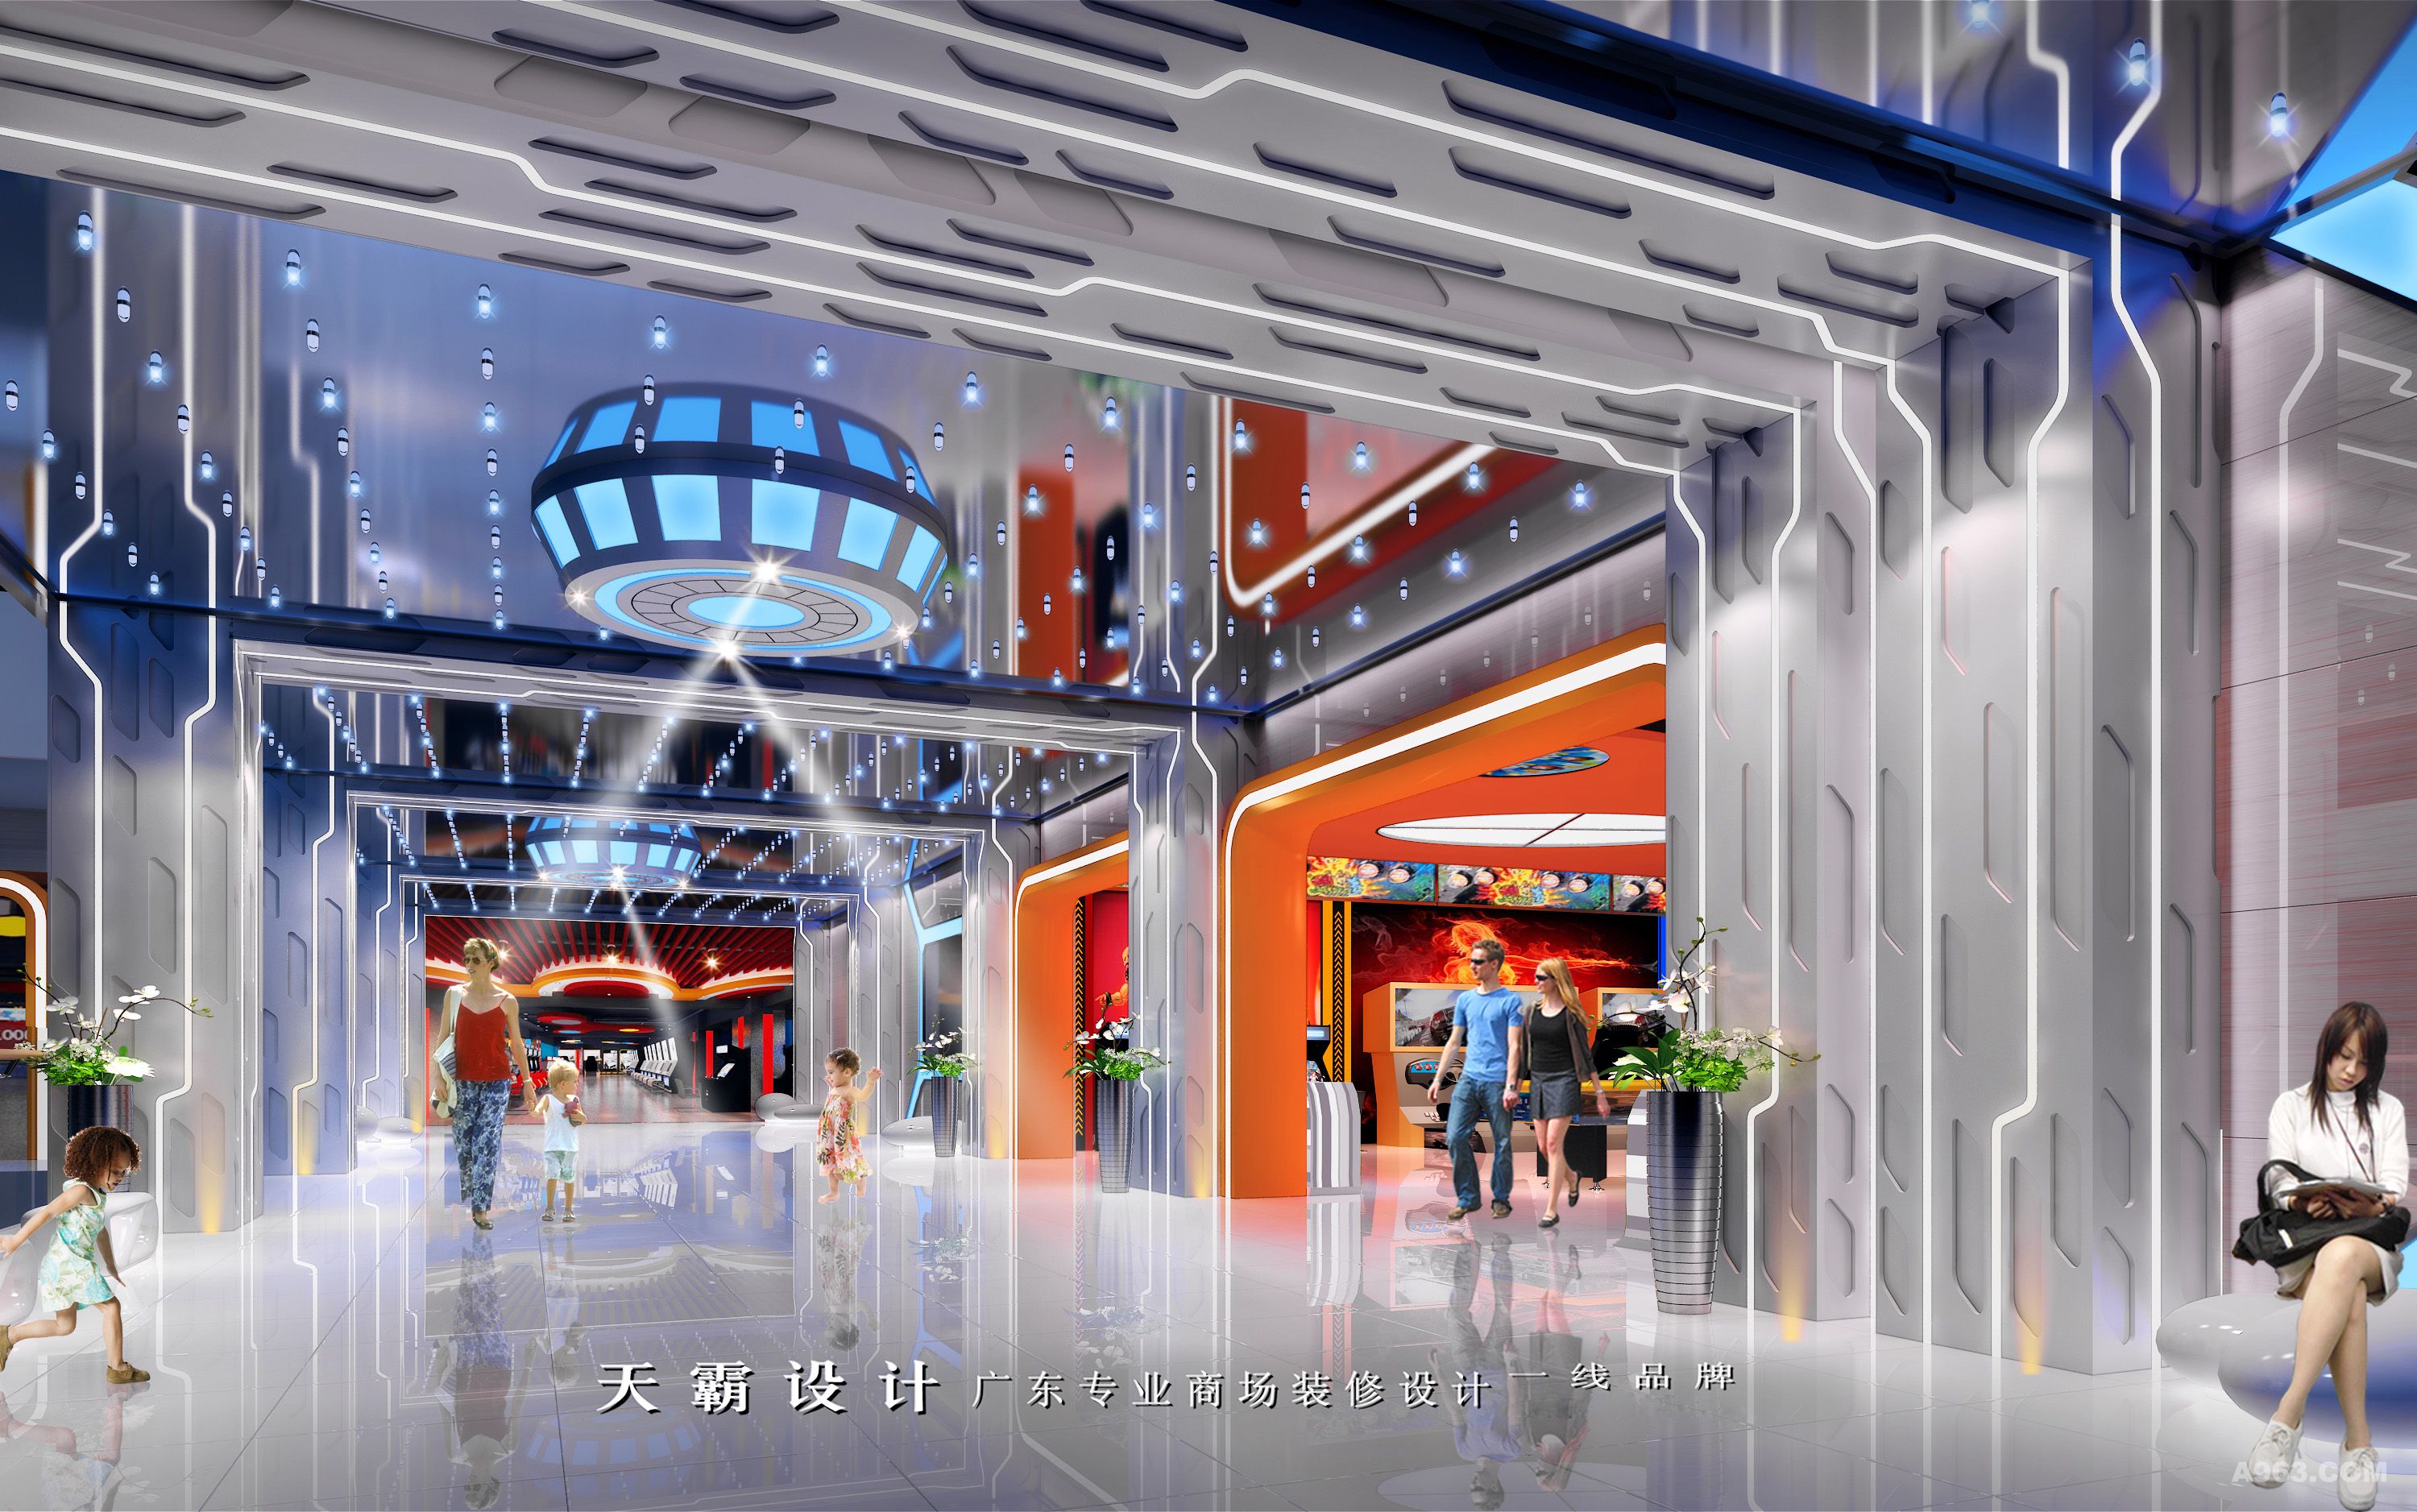 主题式购物中心设计效果图设计灵感如何塑造天霸设计与您分享